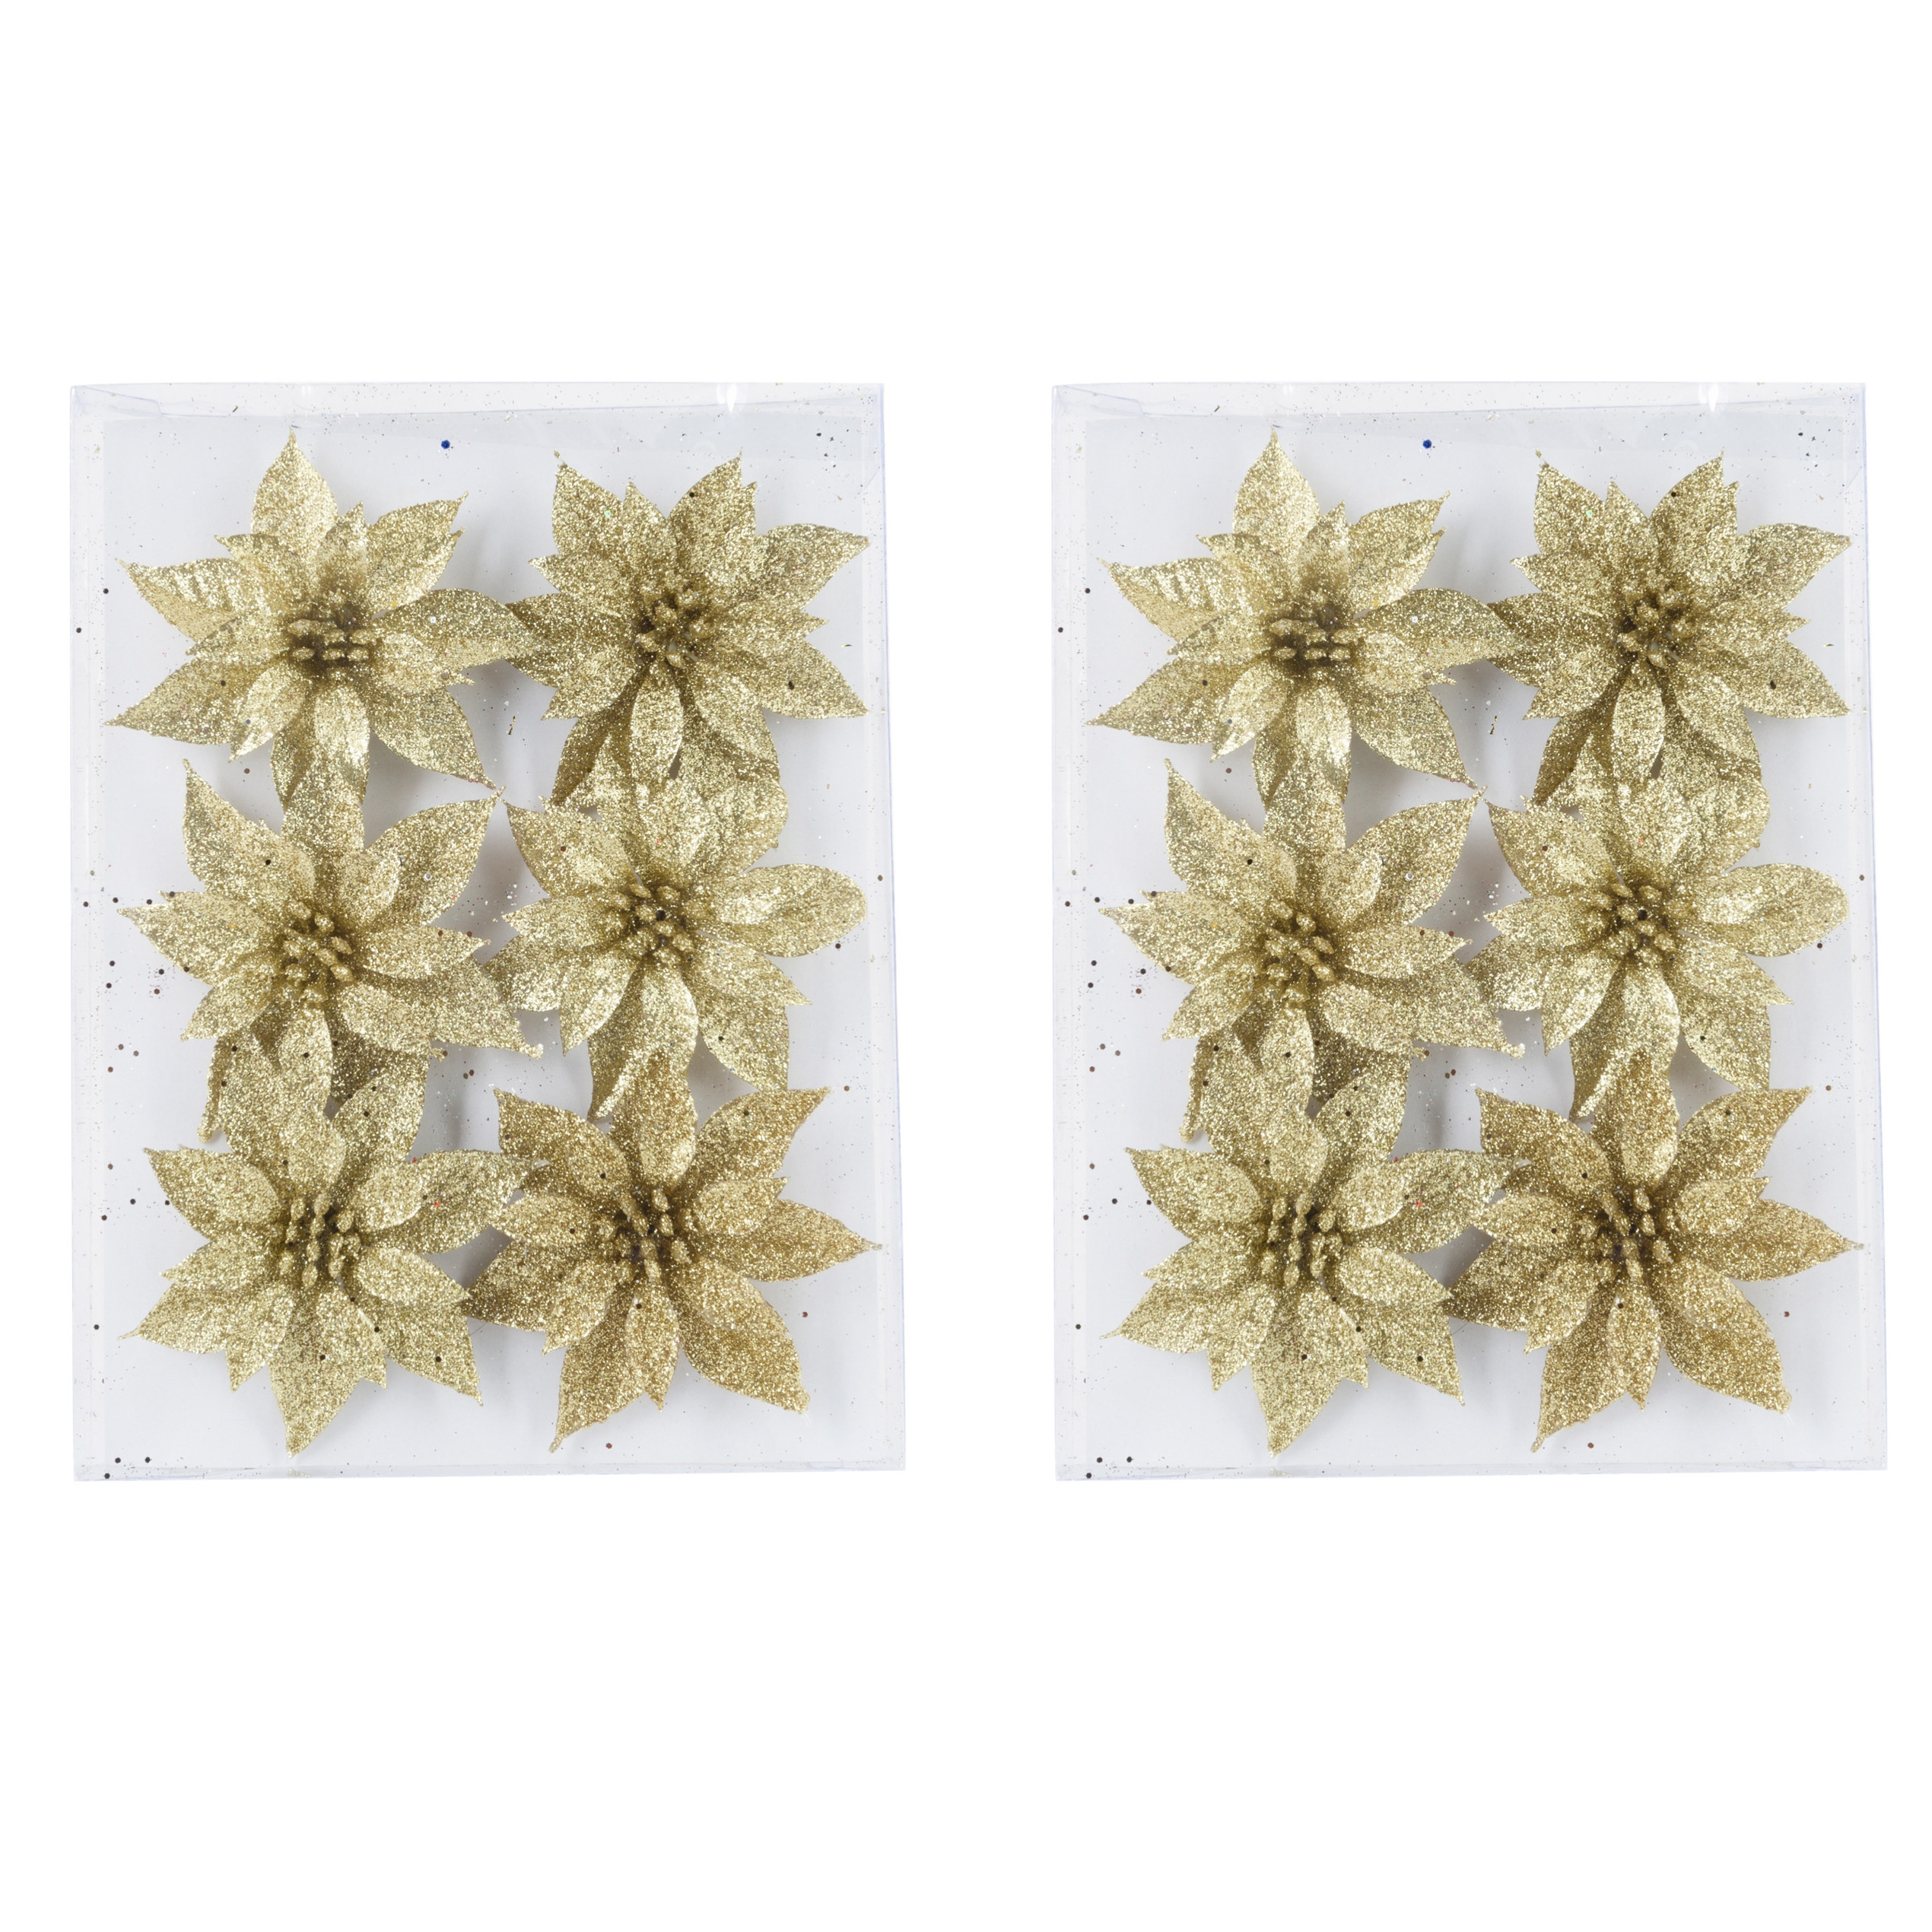 18x stuks decoratie bloemen rozen goud glitter op ijzerdraad 8 cm